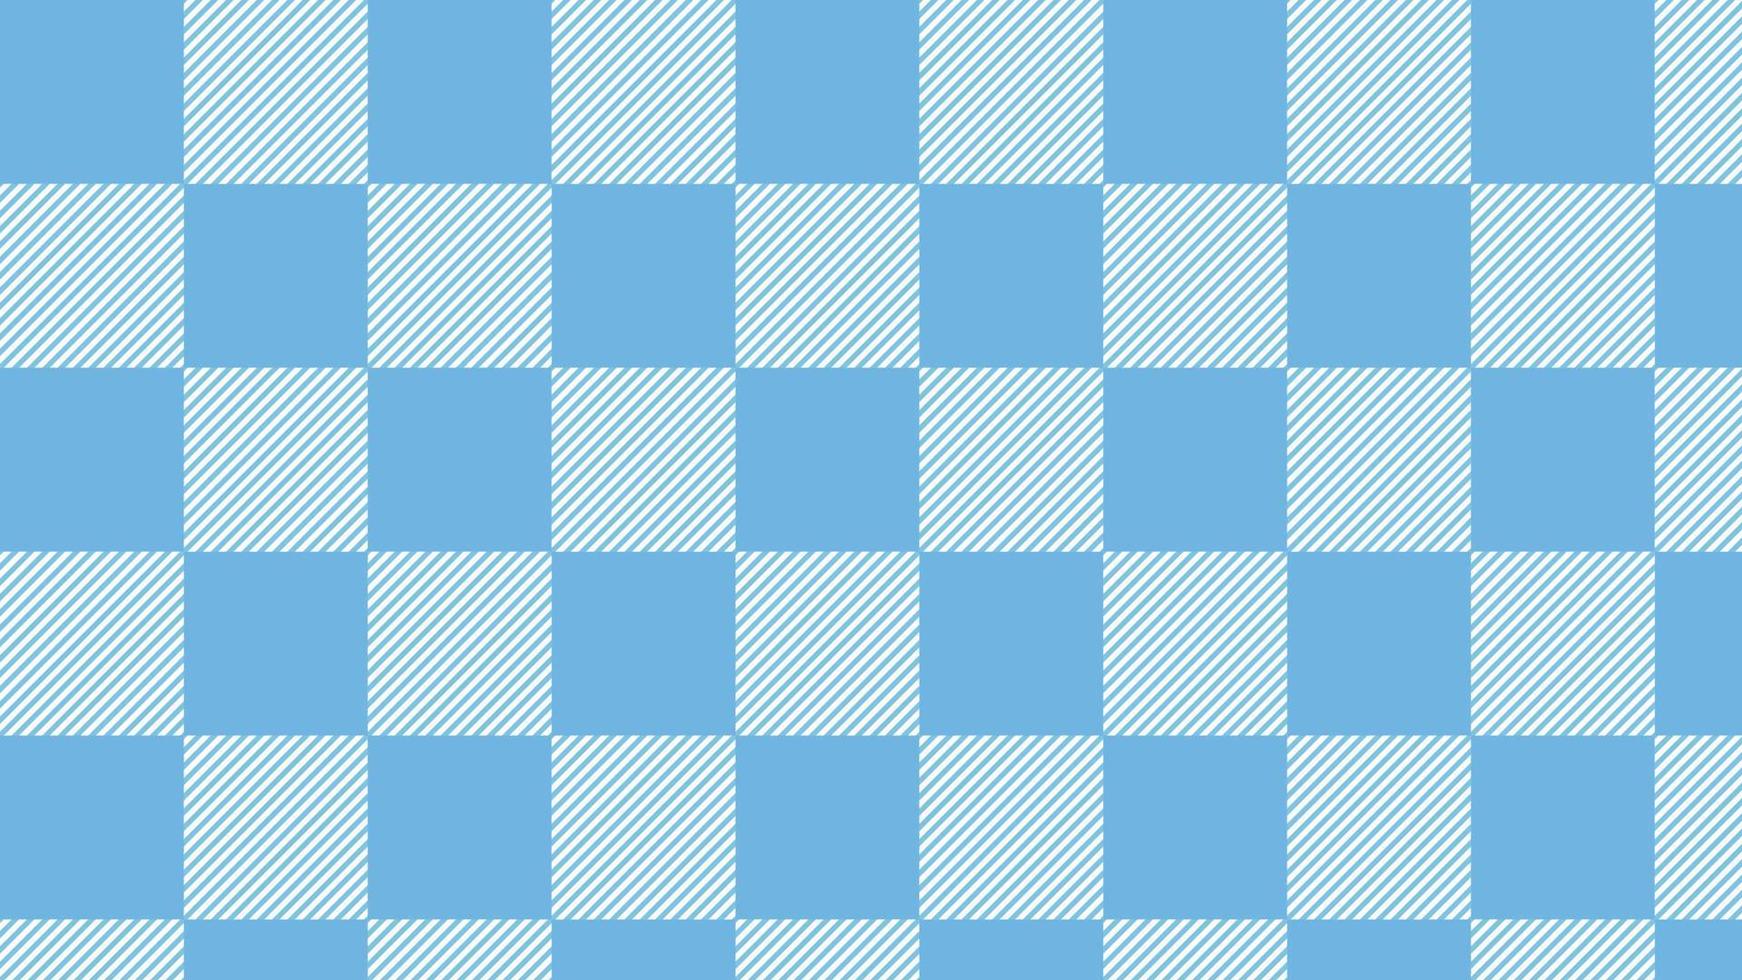 lindo tartán azul, damas, guinga, tela escocesa, ilustración de fondo de tablero de ajedrez, perfecto para pancarta, papel tapiz, telón de fondo, postal, fondo vector